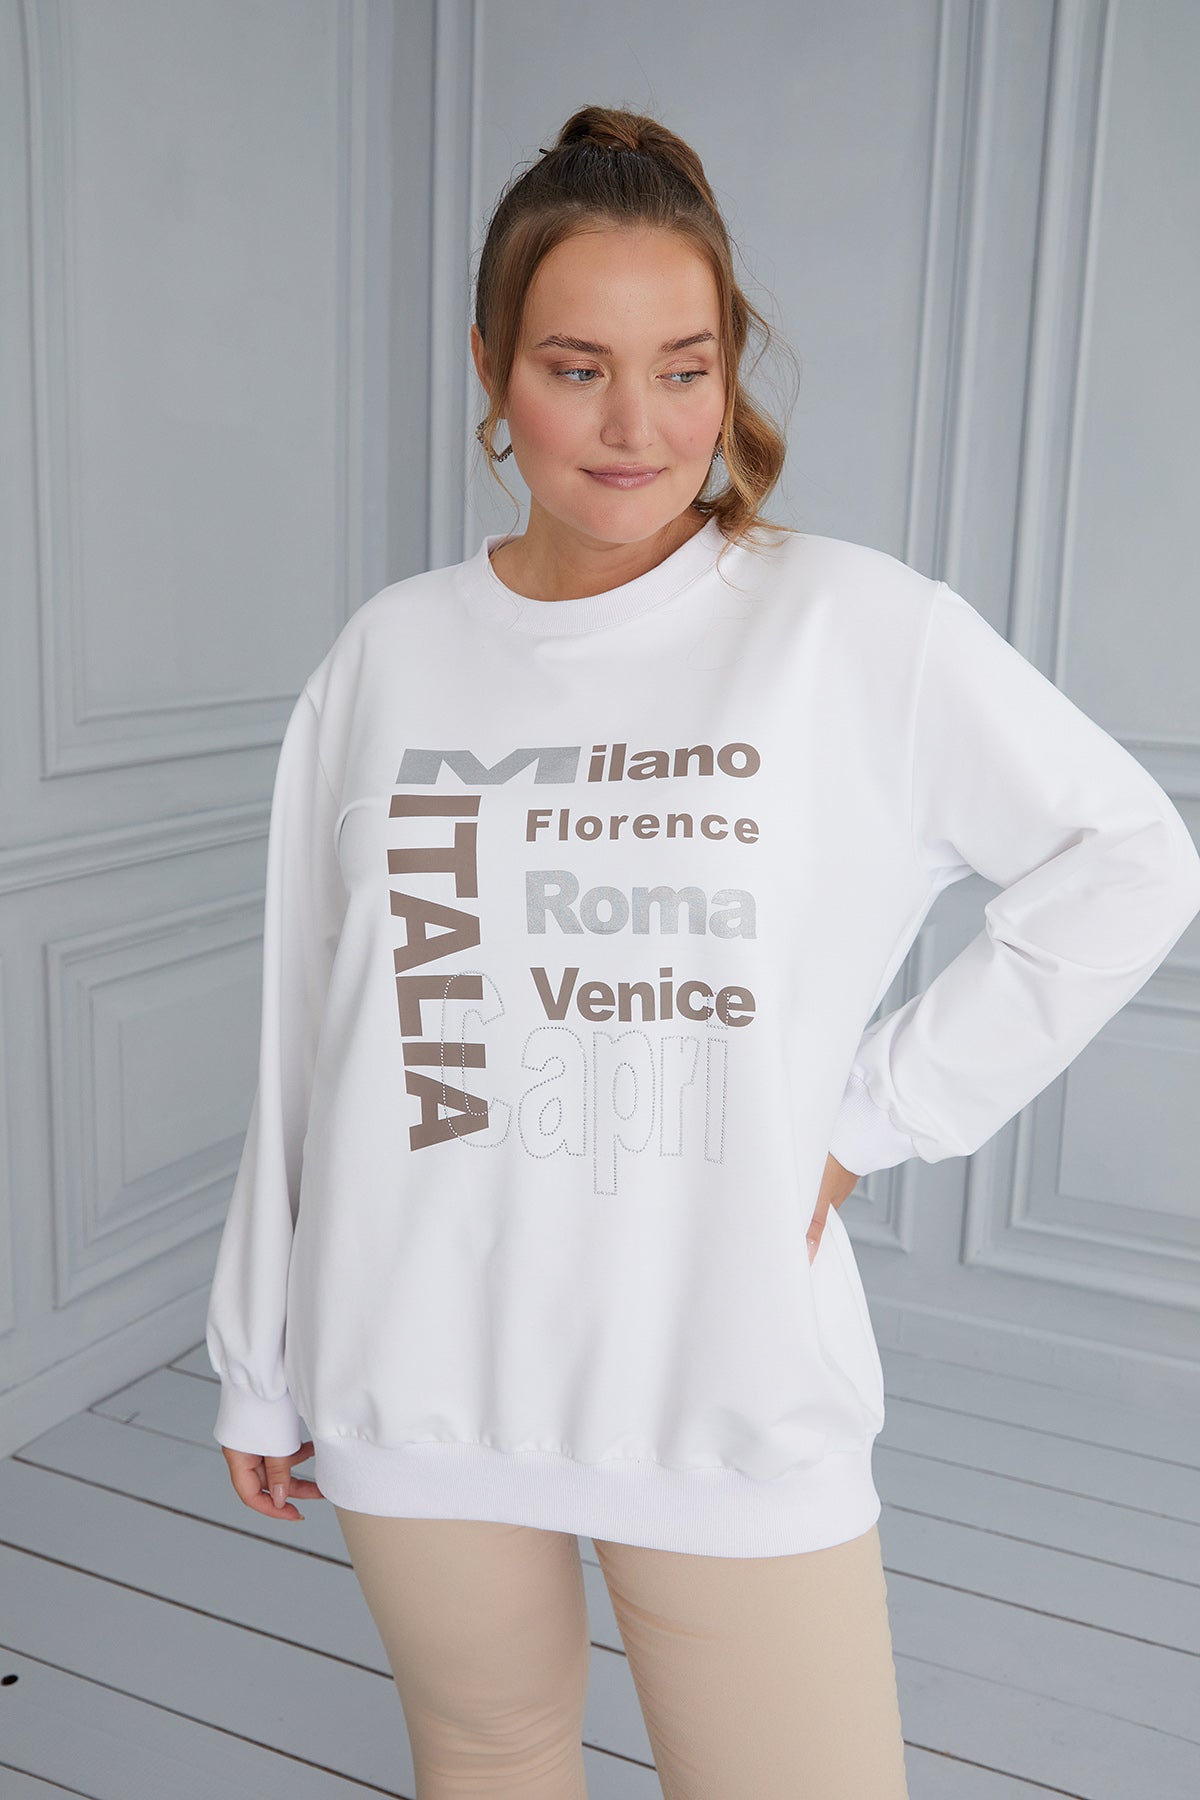 Γυναικεία μπλούζα με στάμπα Italia σε μεγάλα μεγέθη - Άσπρο